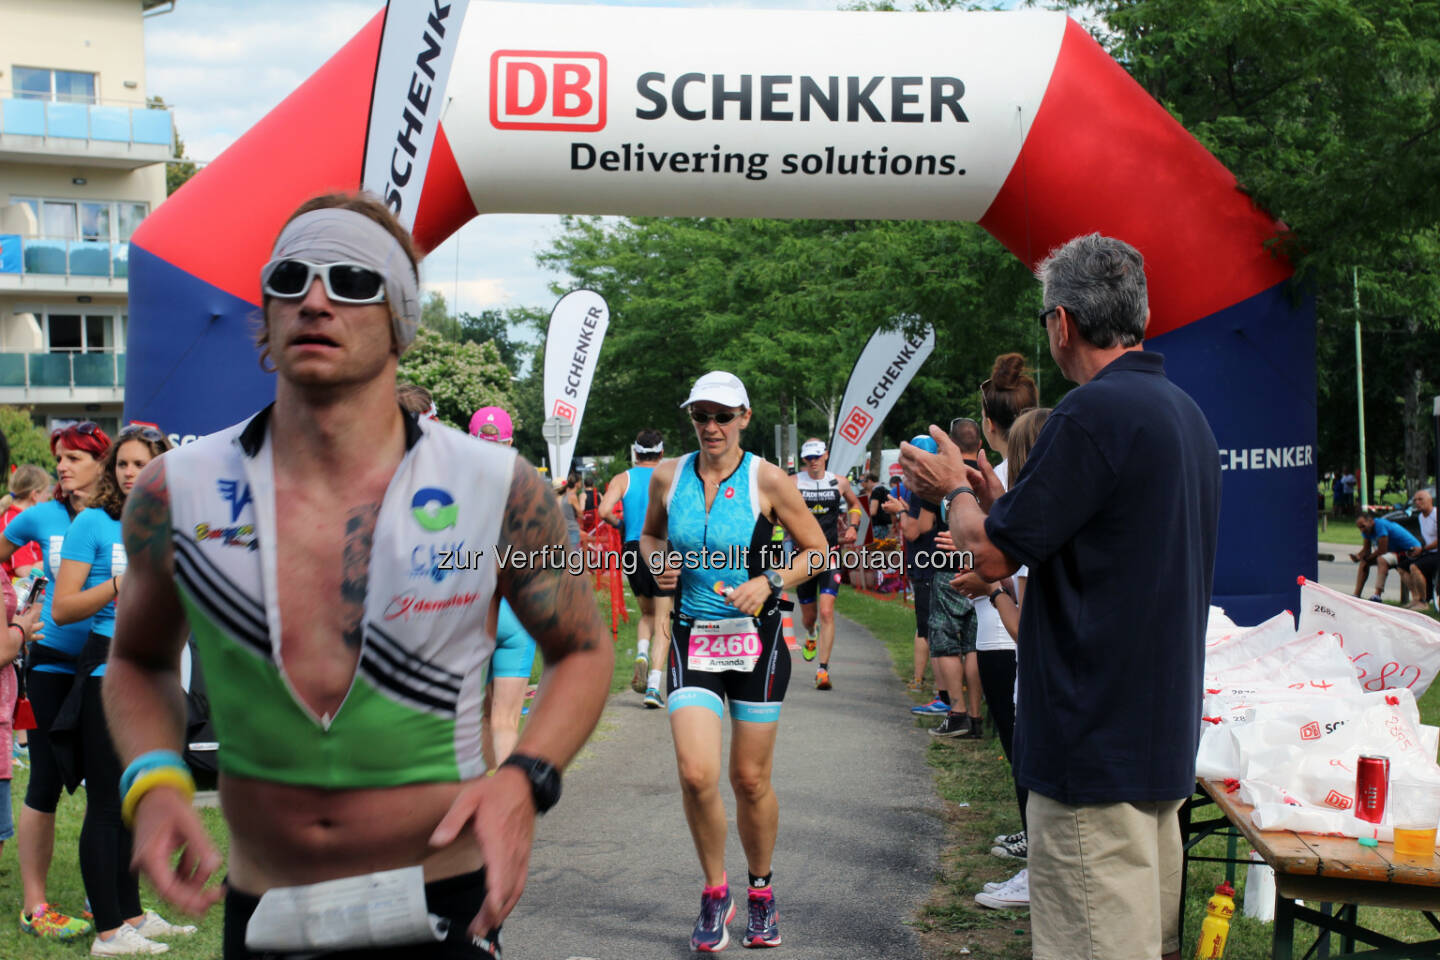 DB Schenker in Österreich: Ironman 2016: 3.000 Sportler setzen auf DB Schenker. Rund 100 Mitarbeiter von DB Schenker aus ganz Österreich unterstützen das Ironman-Team und kümmern sich neben der Verteilung der Ablaufinformationen vor allem um die umfangreiche Versorgung der über 3.000 Sportler. (C) DB Schenker